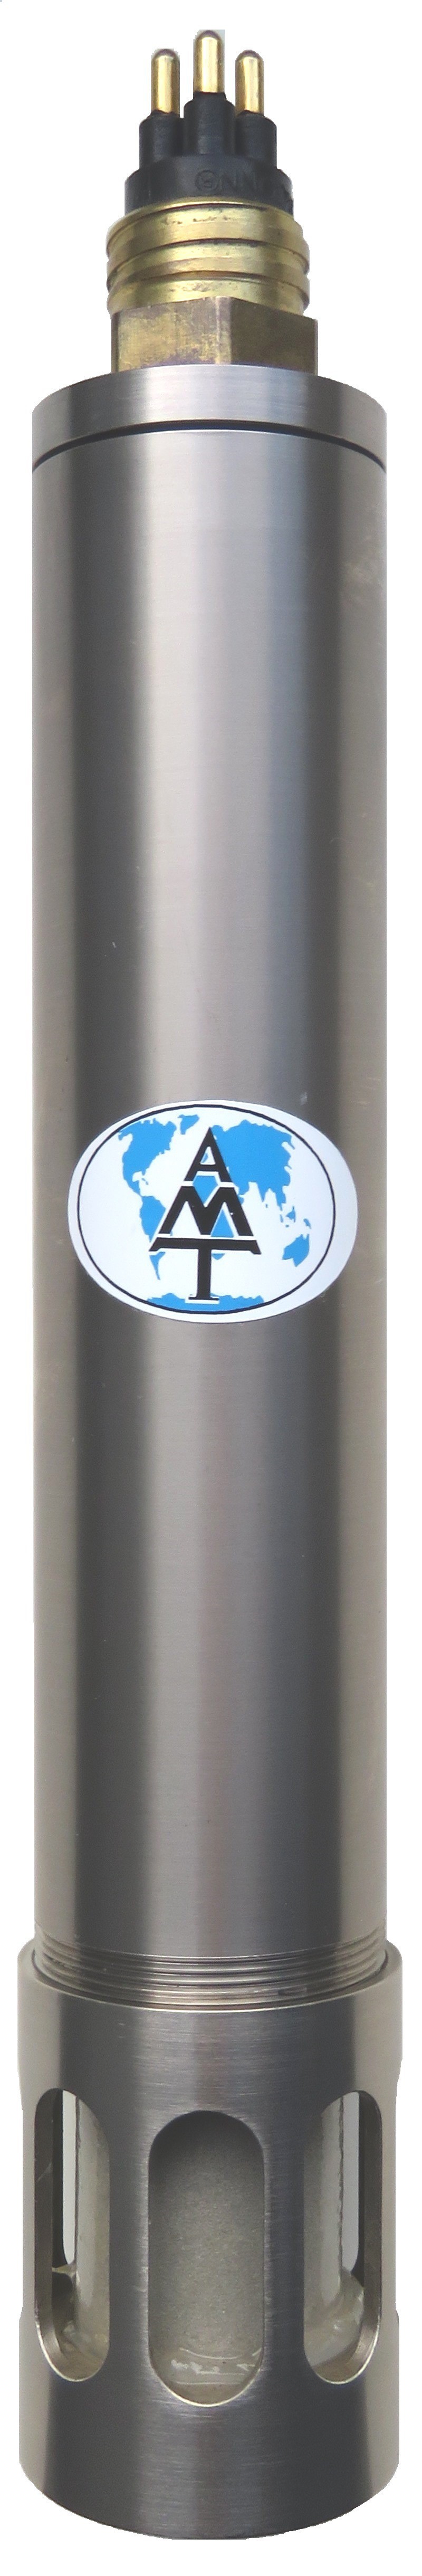 AMT   膜覆盖光学CO2传感器